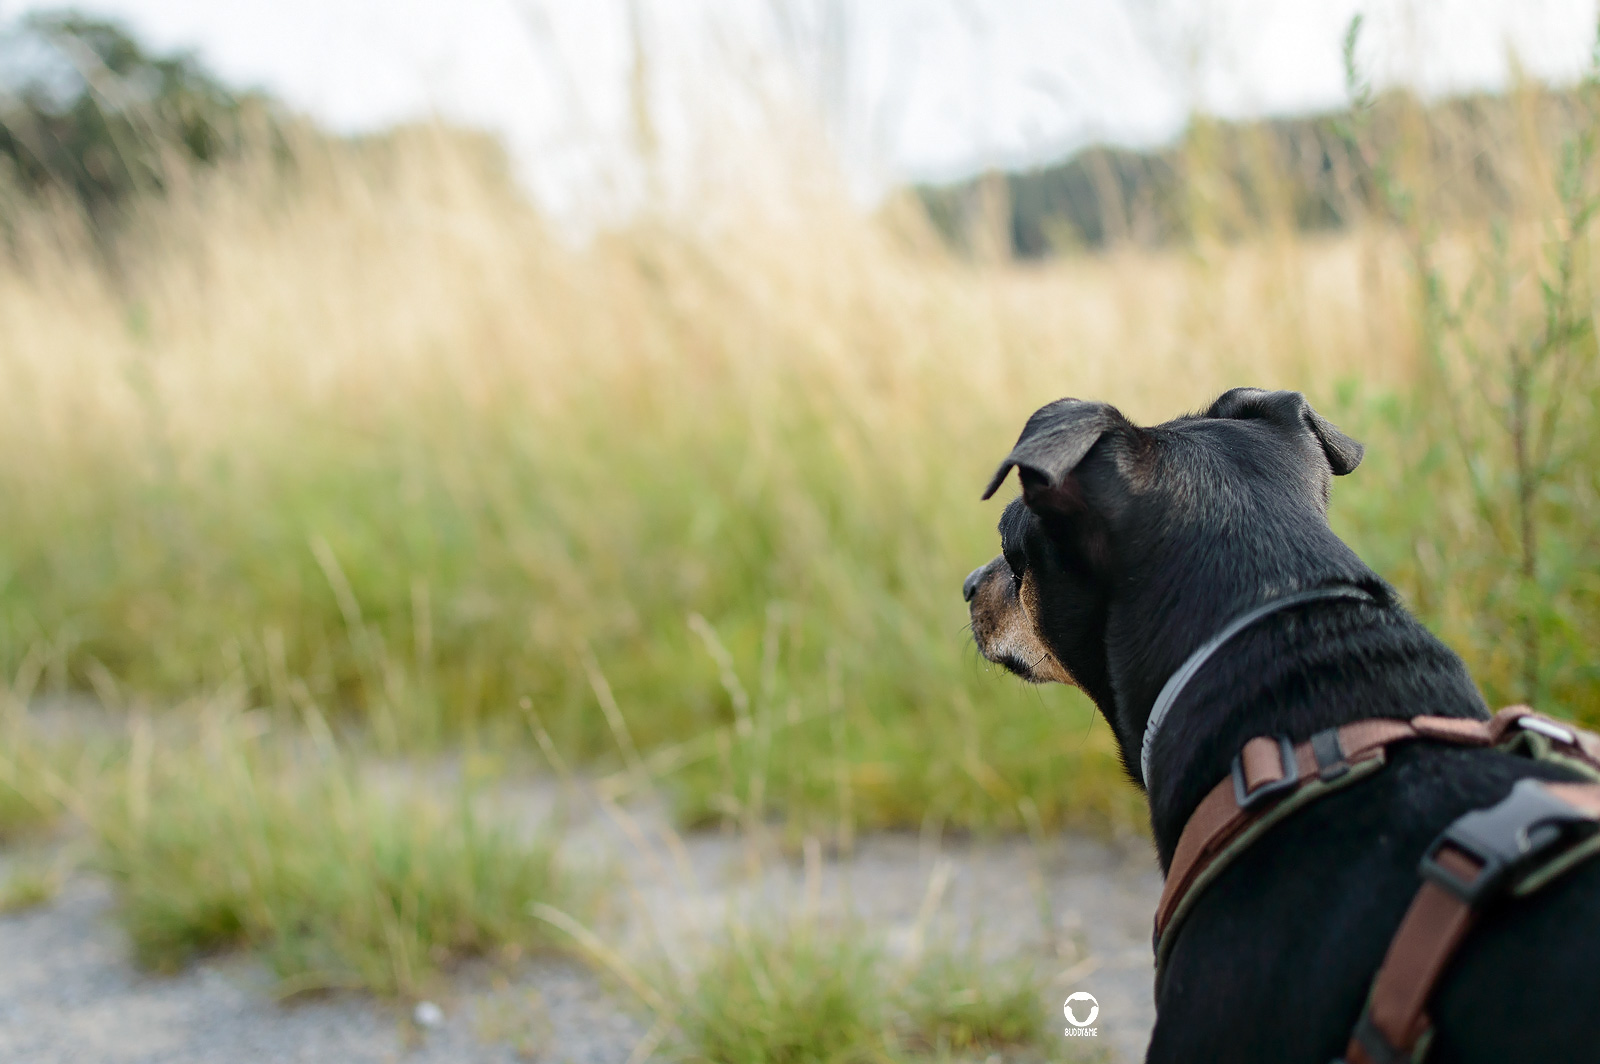 Sommerspaziergang - Pinscher Buddy schaut einen geschotterten Feldweg entlang